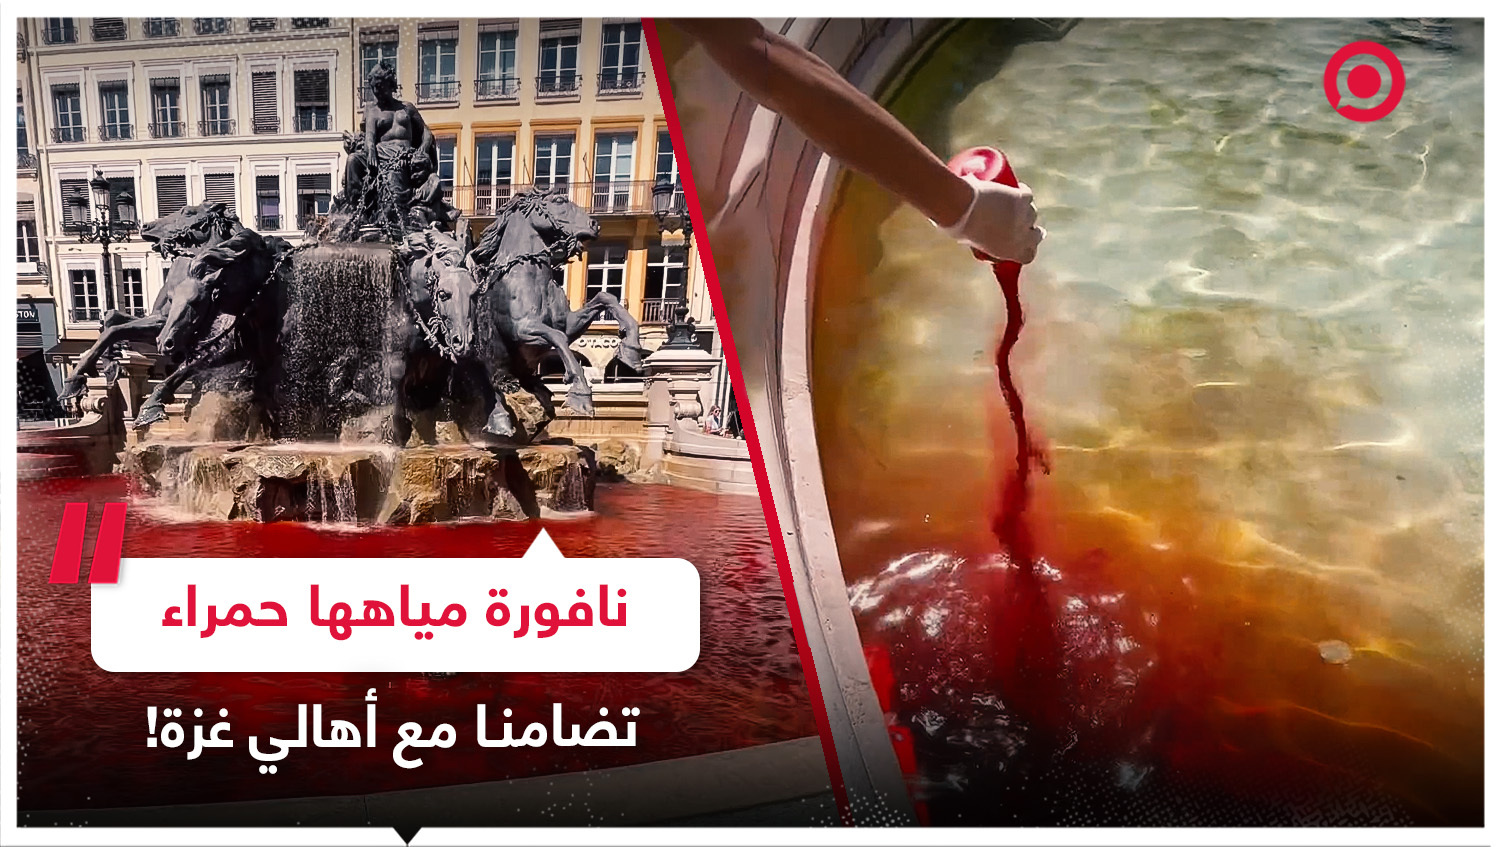 داعمو فلسطين في فرنسا يصبغون مياه نافورة وسط مدينة ليون باللون الأحمر